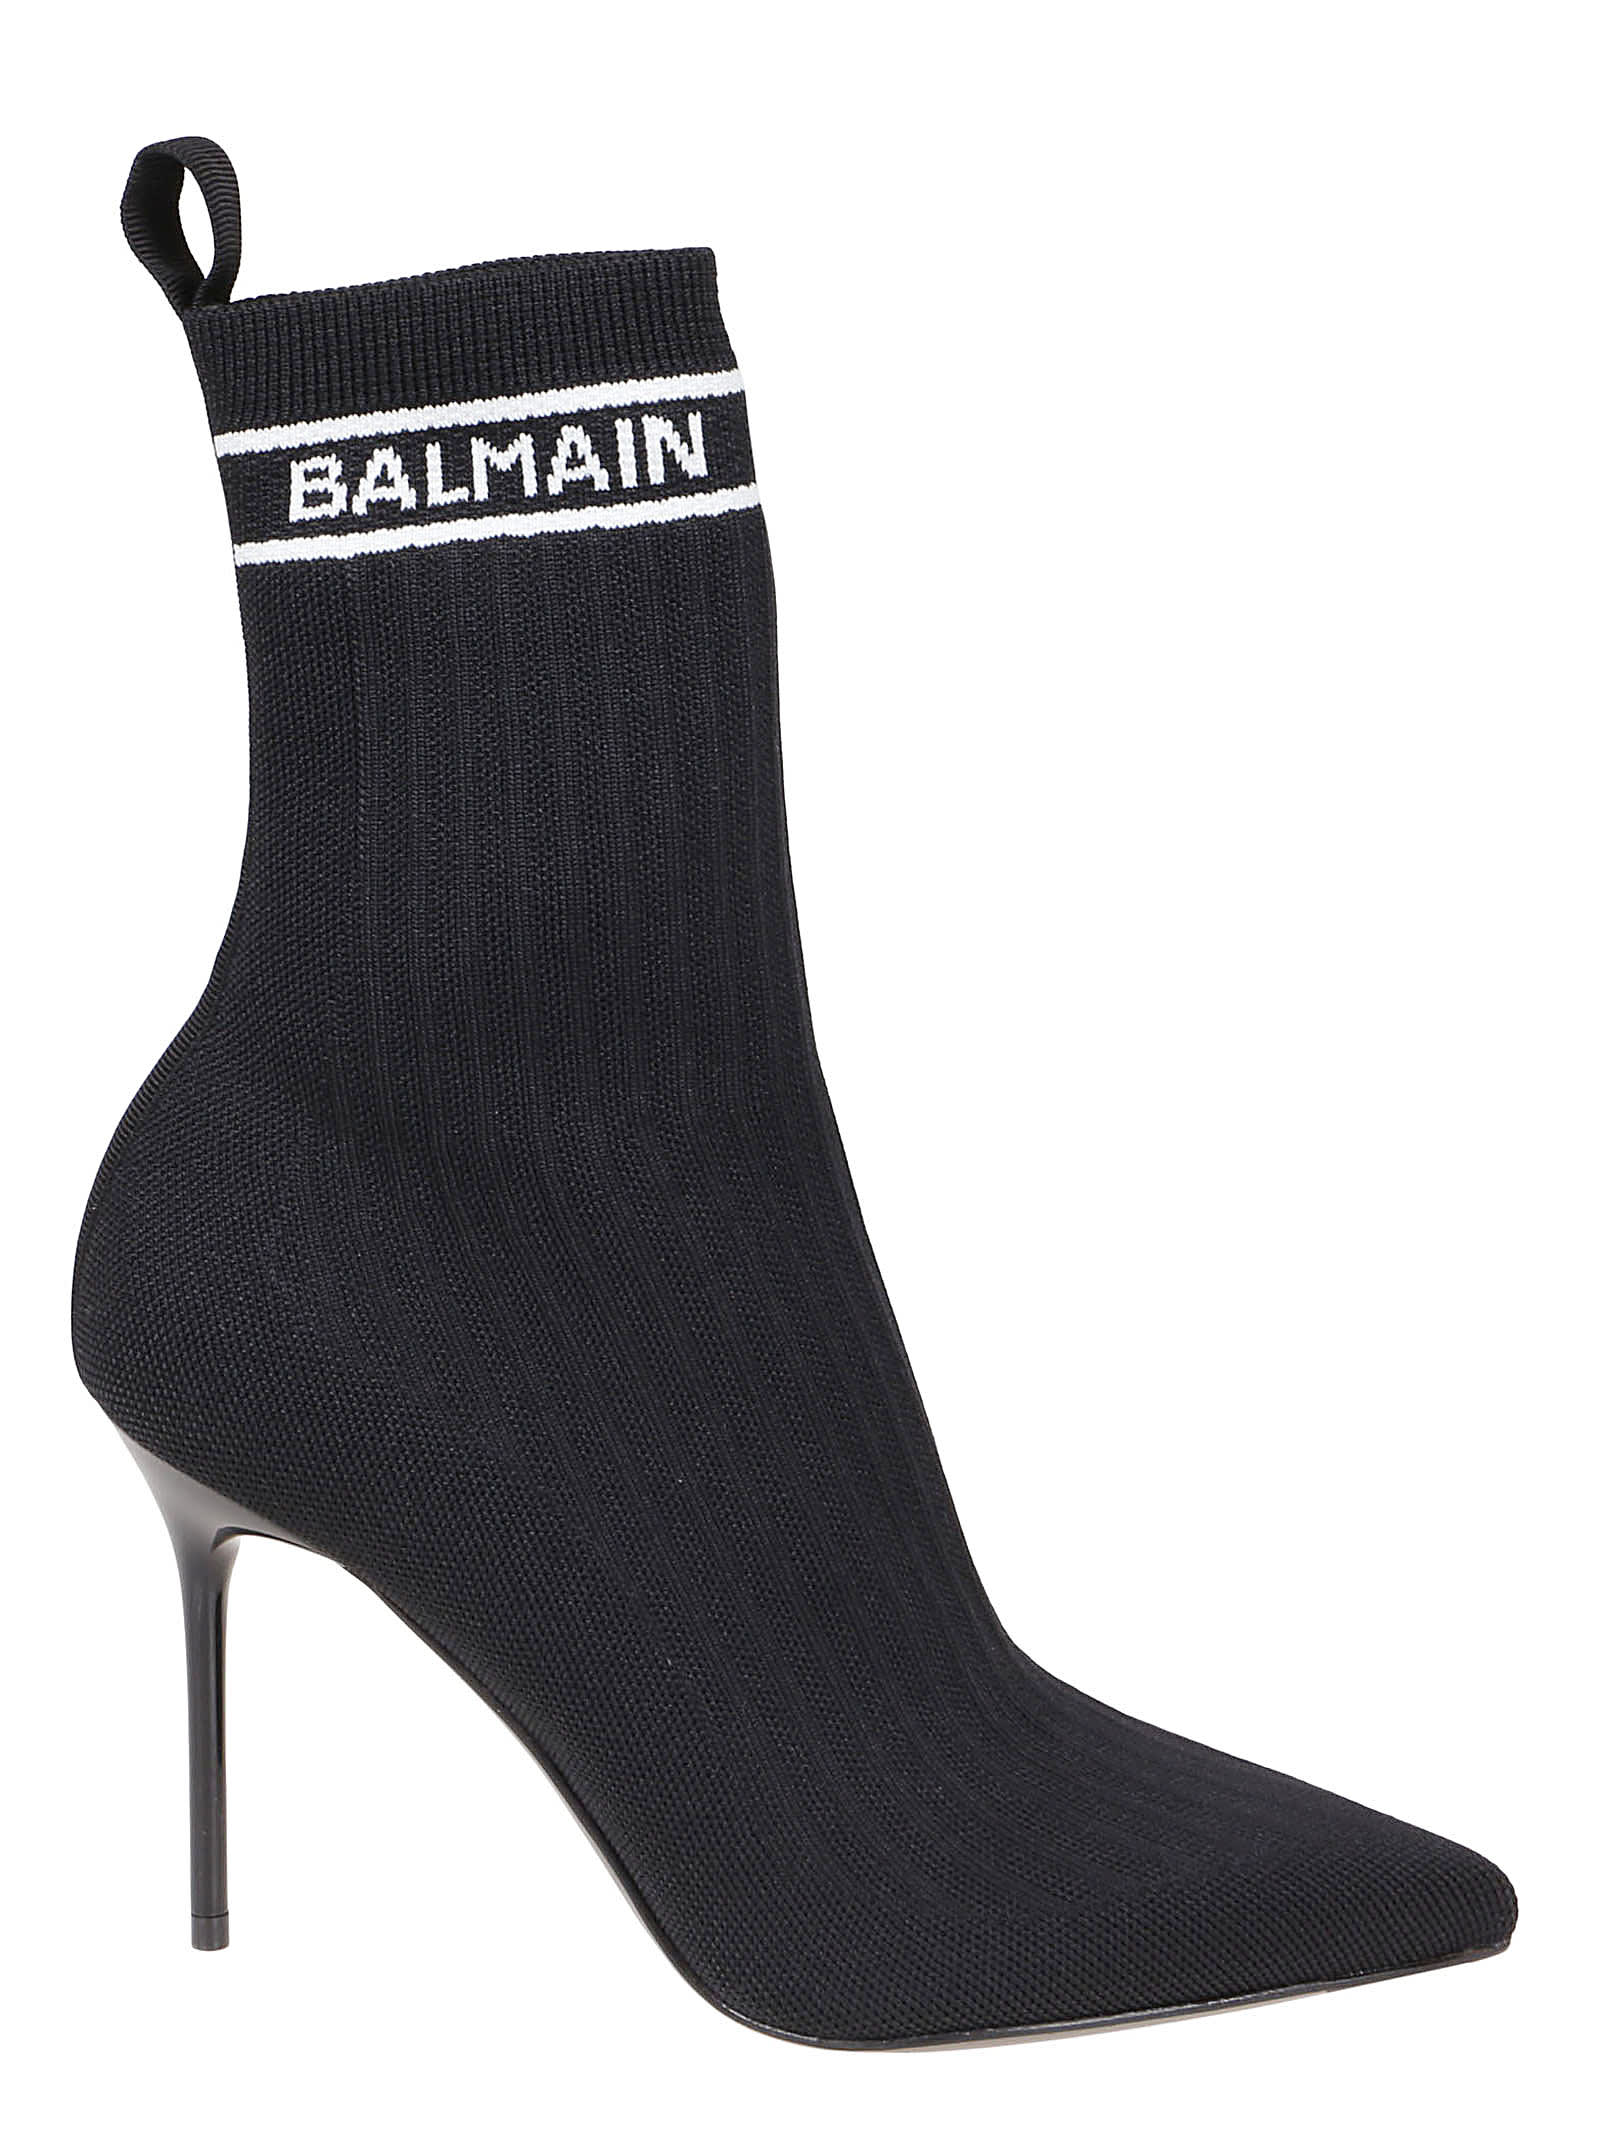 Buy Balmain Boot Skye-knit online, shop Balmain shoes with free shipping